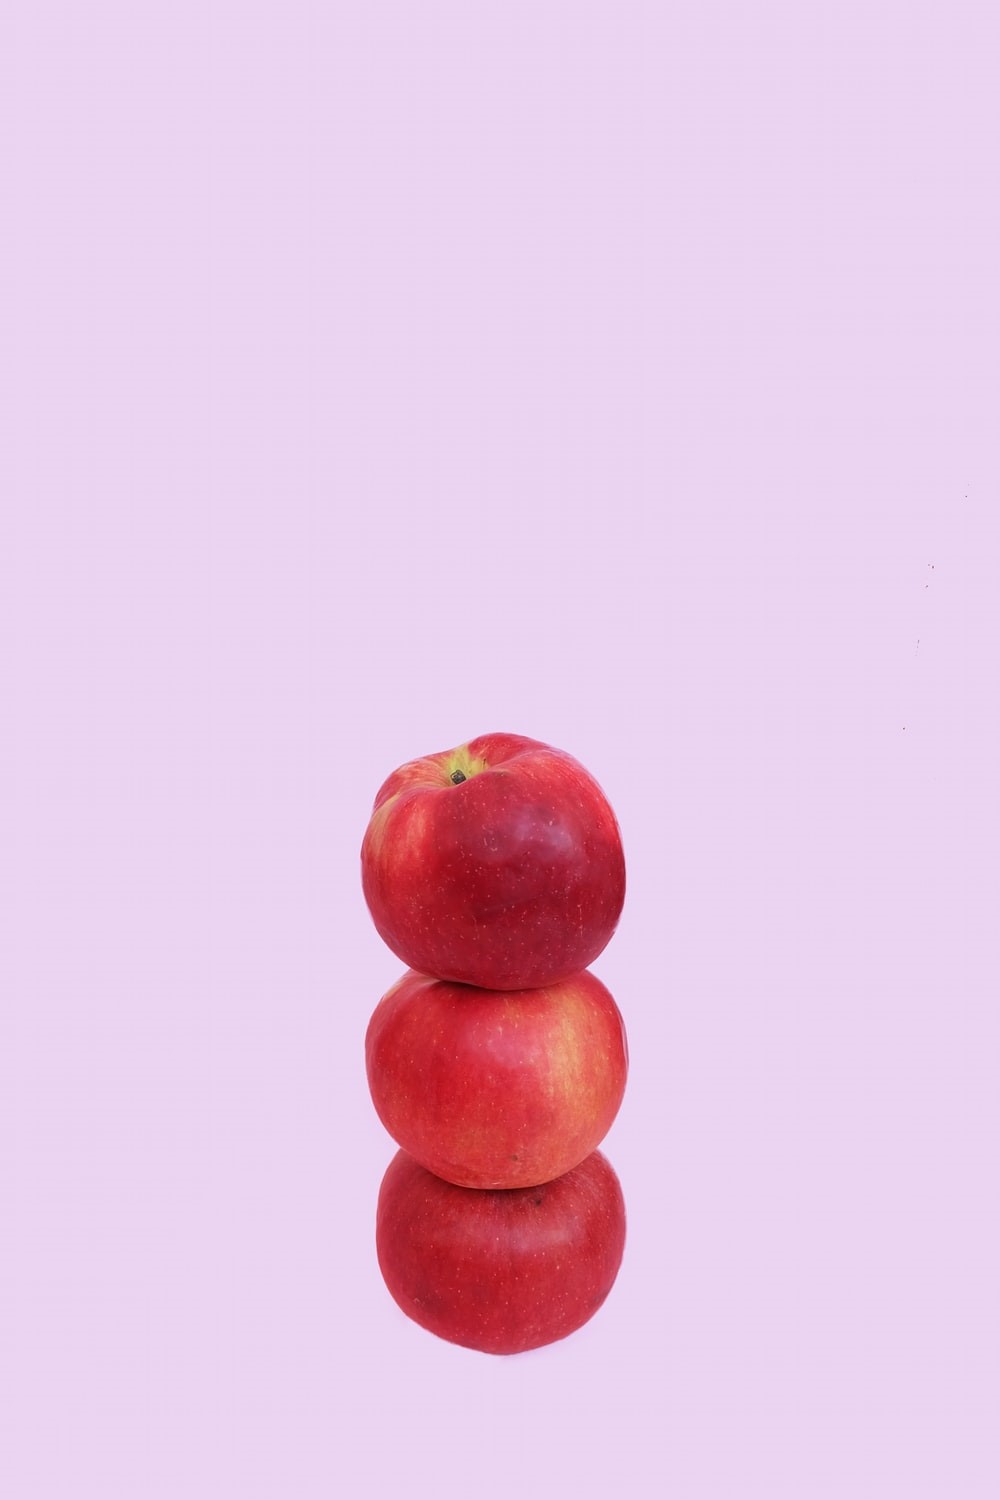 Stapel von zwei roten Äpfeln vor rosa Hintergrund. Aussage: Employer Brand Manager sind Balancehalter der Extraklasse.